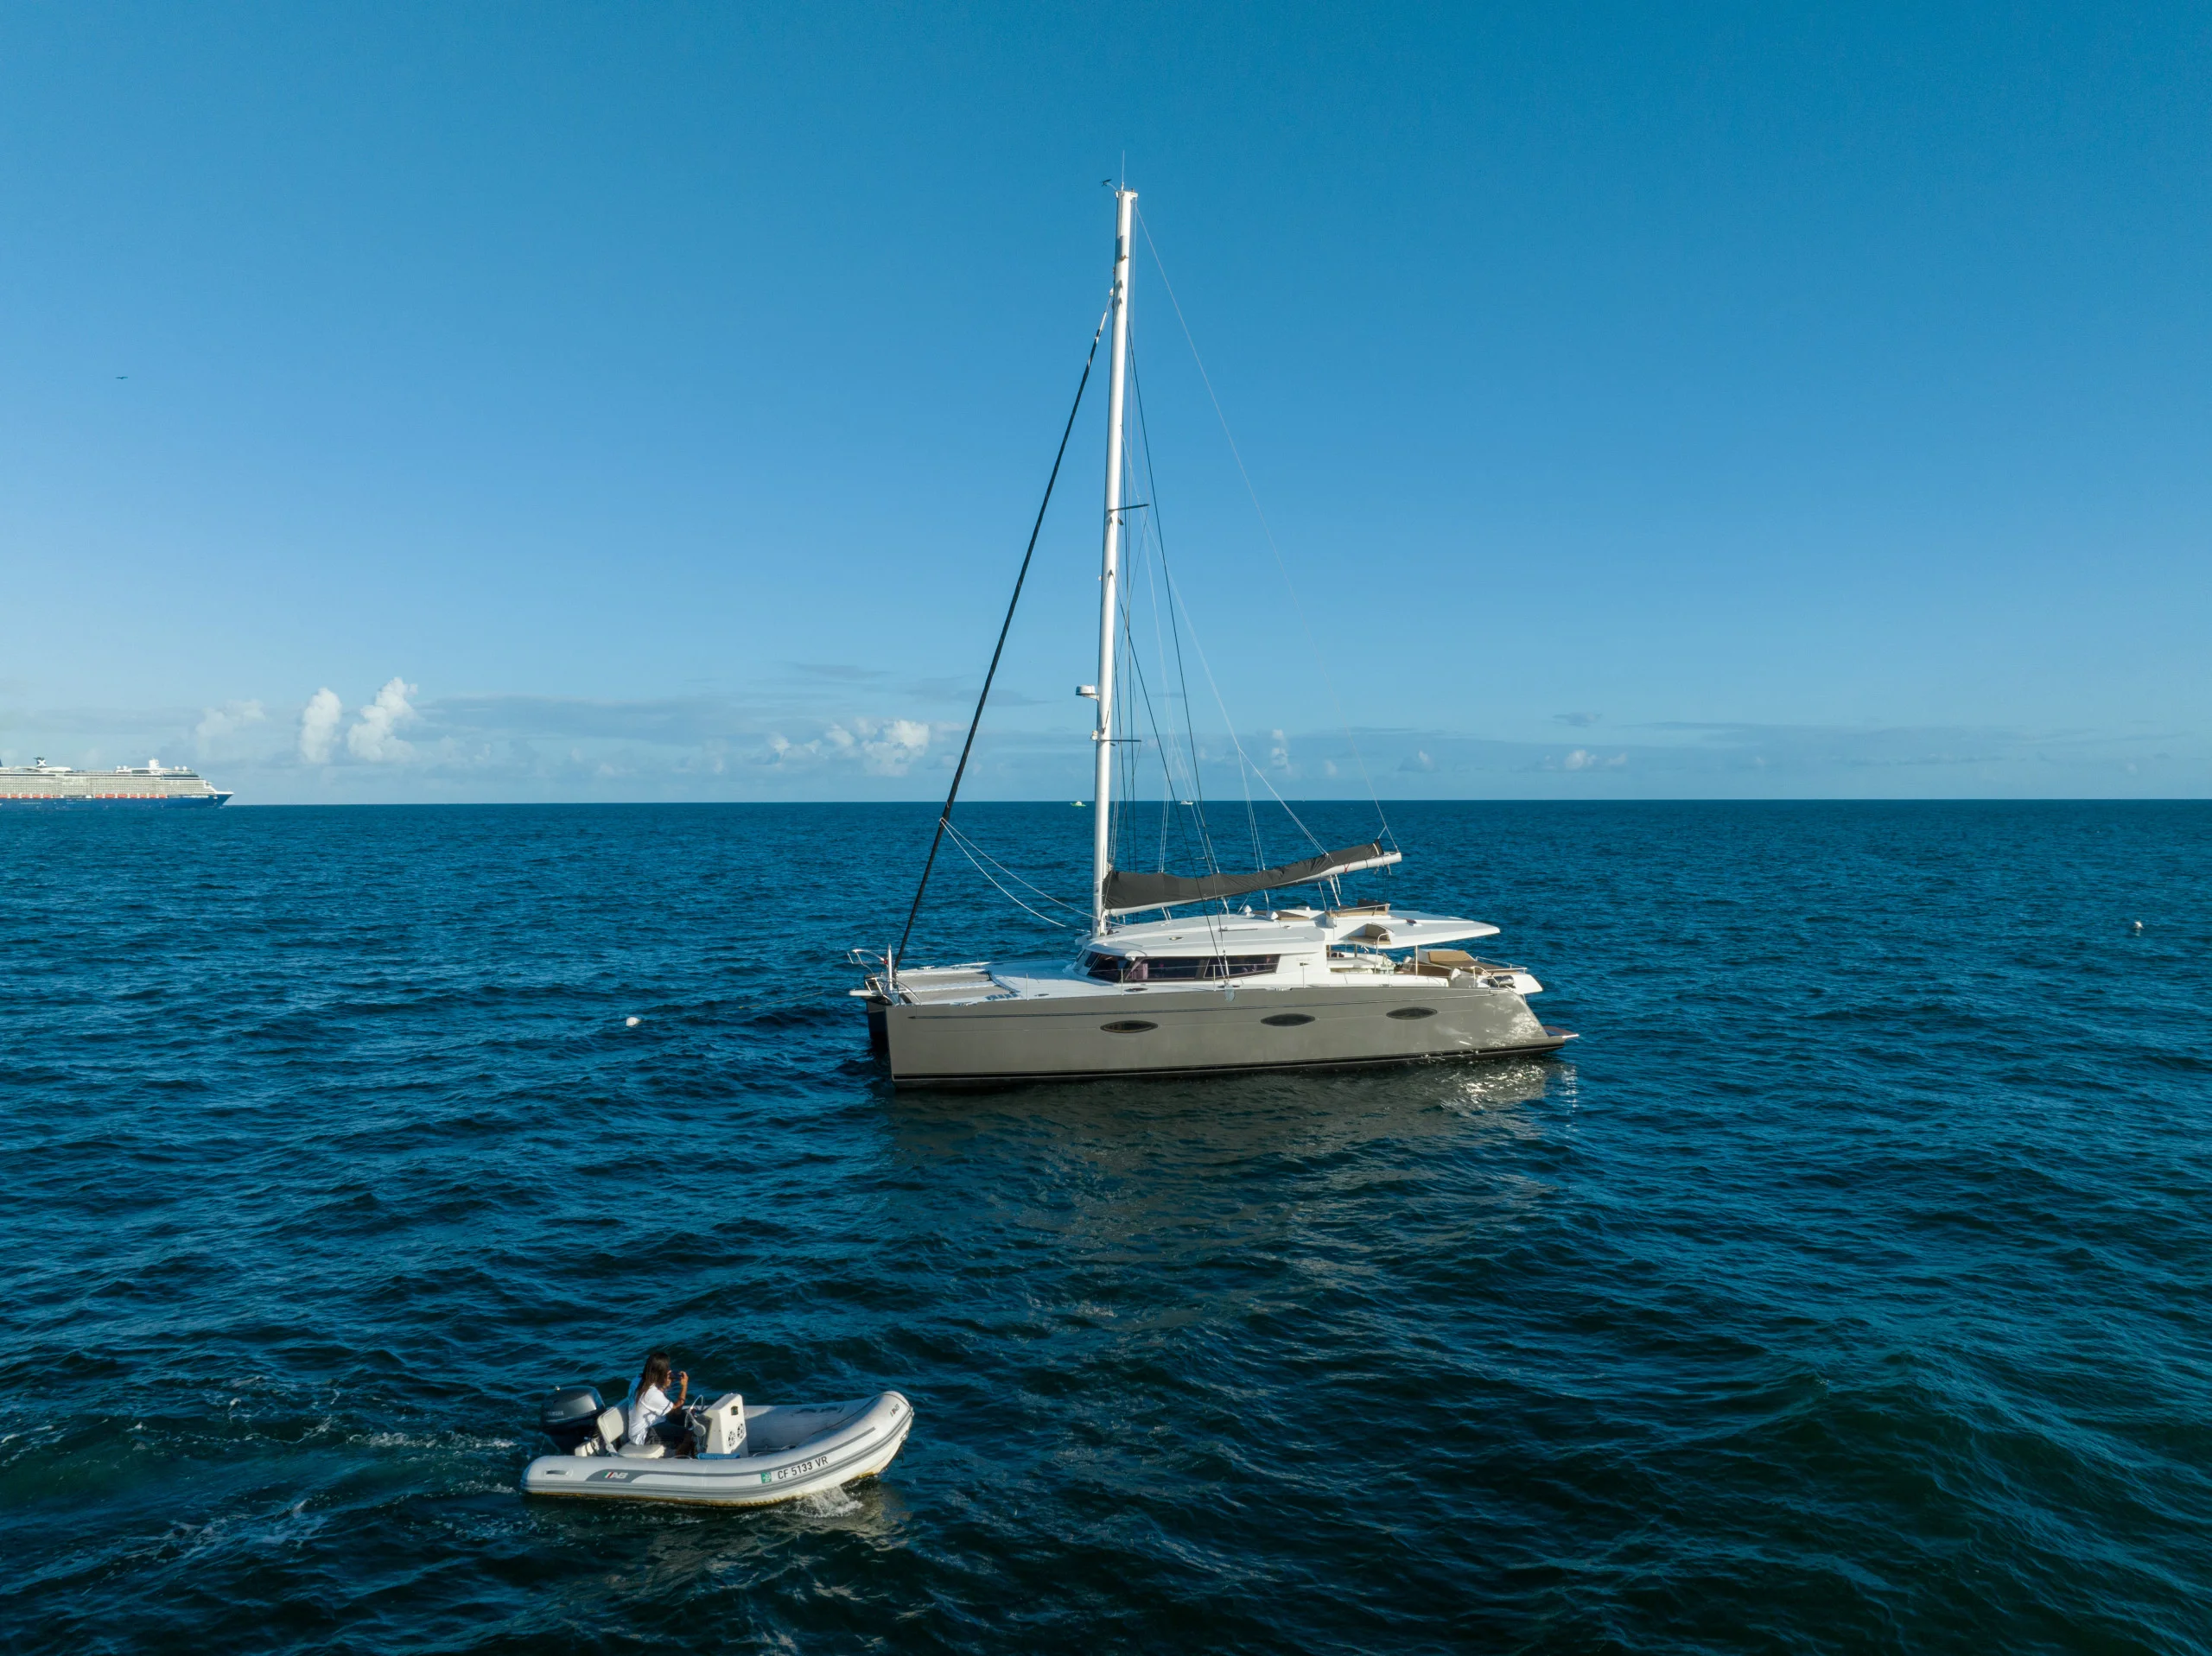 bimini bahamas boat trip